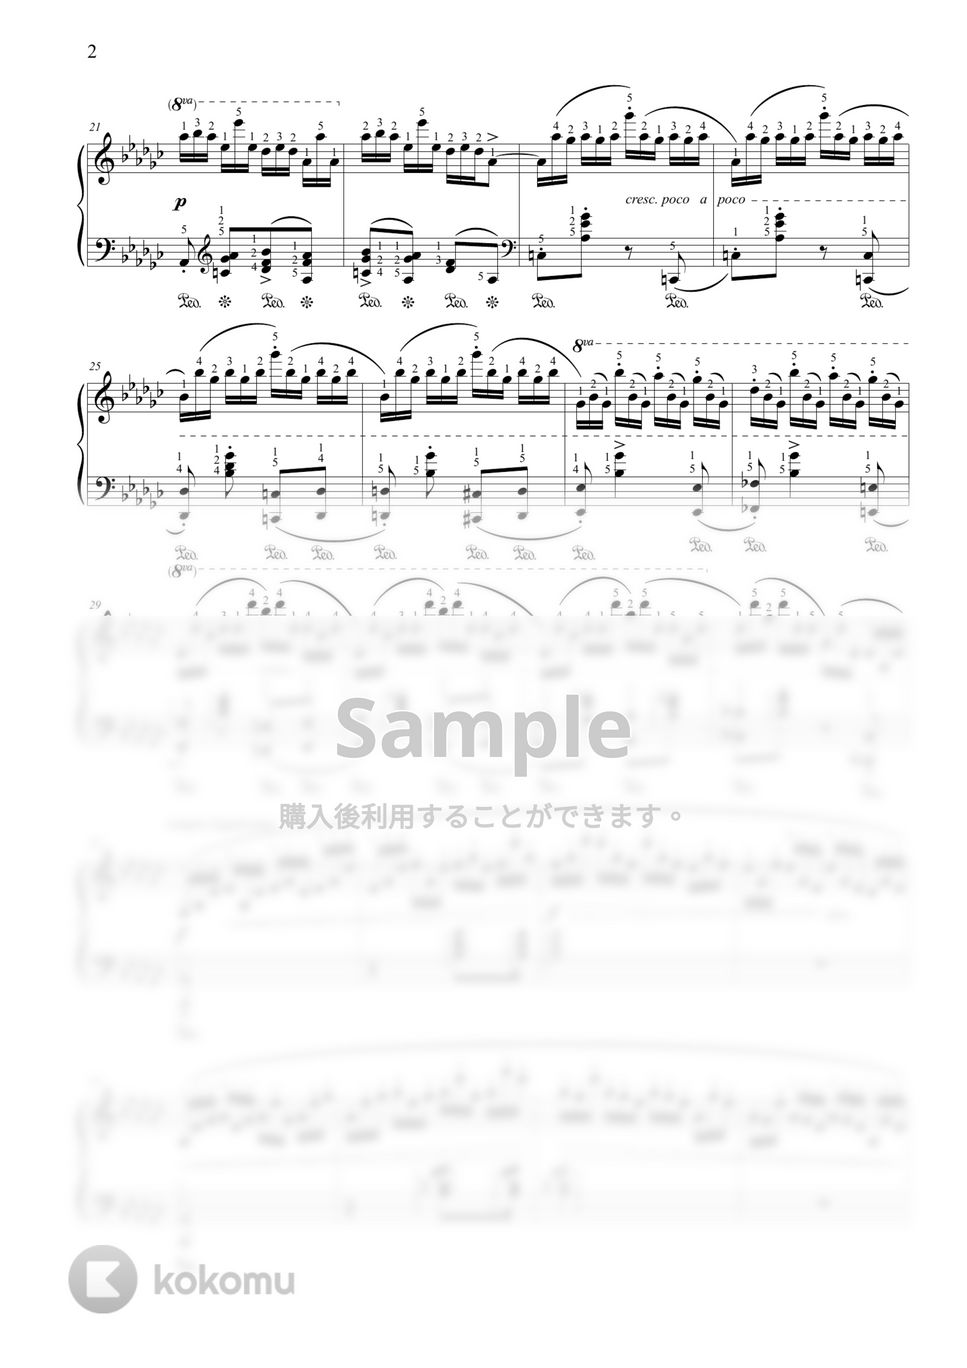 ショパン(F. Chopin) - エチュードOp. 10 No. 5 (Black Keys) by THIS IS PIANO